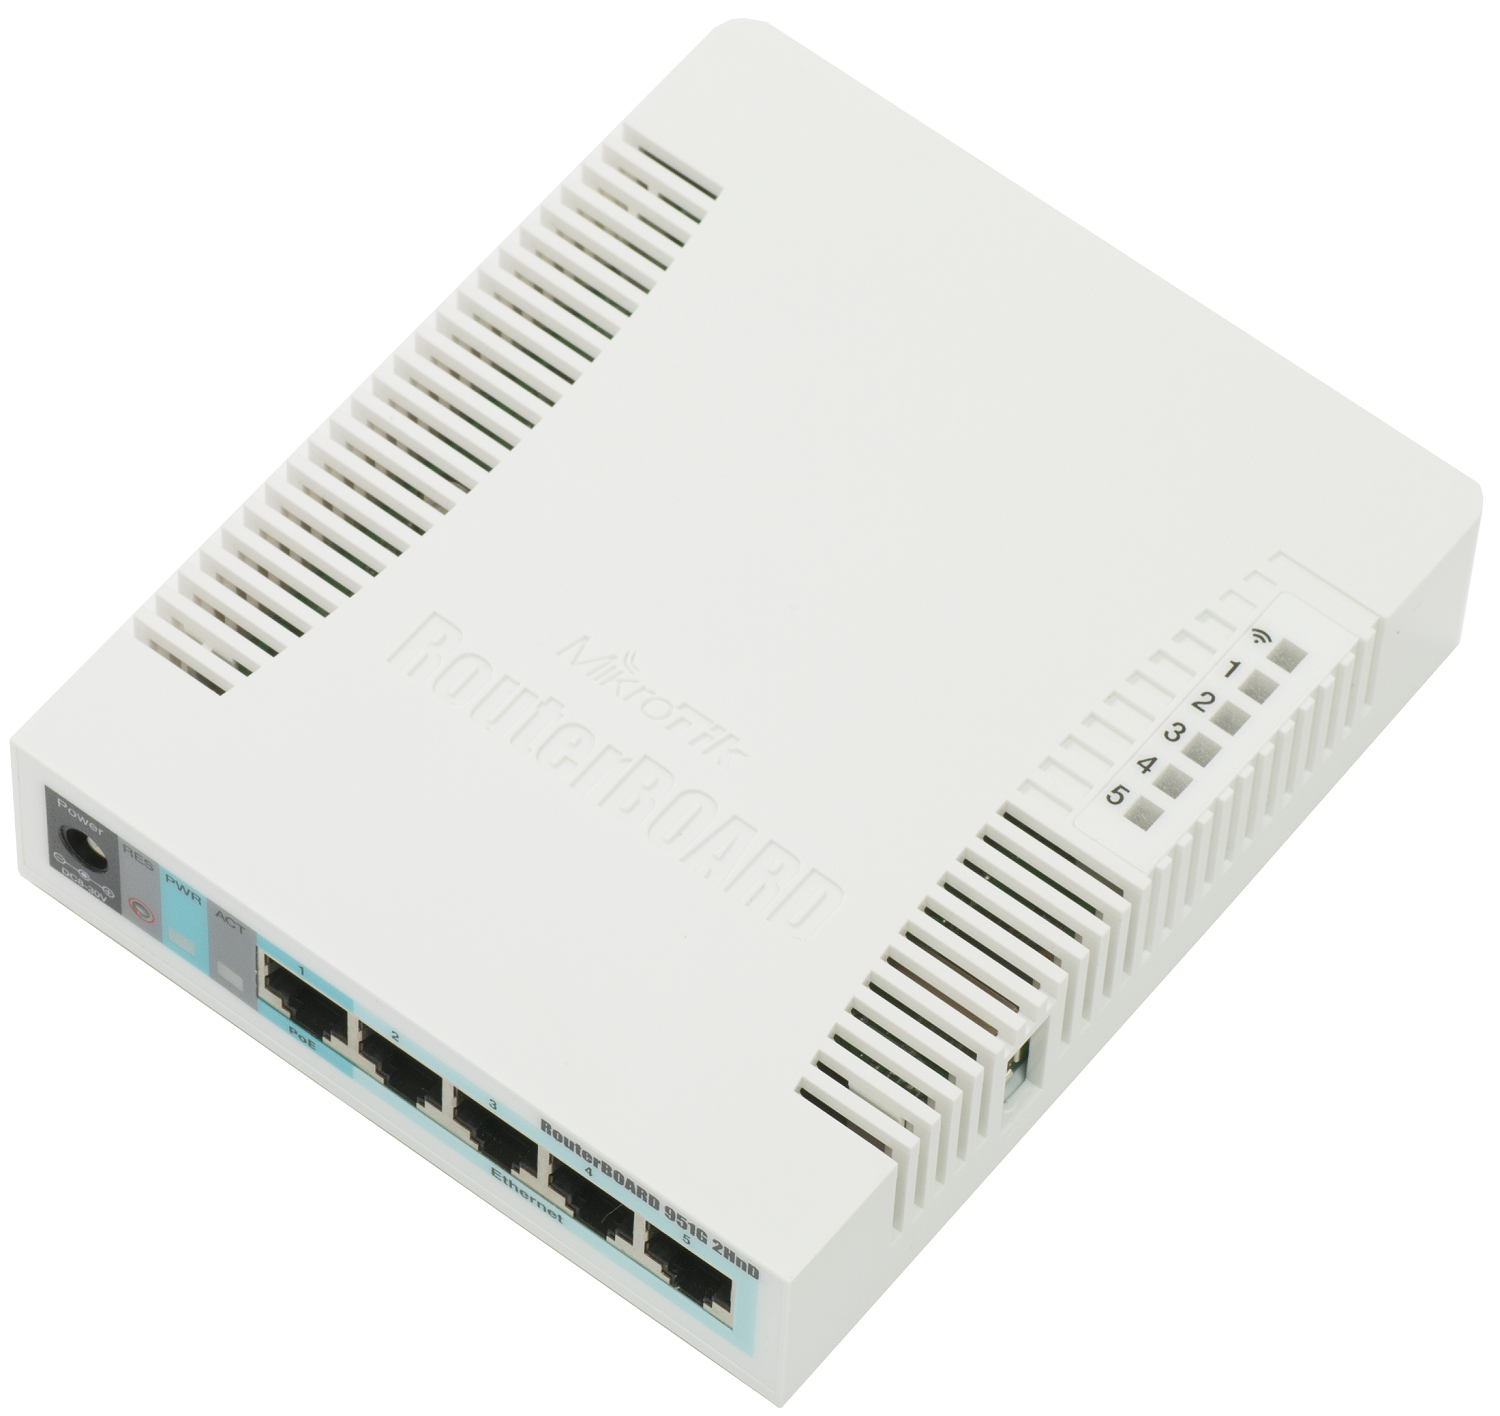 Thiết bị cân bằng tải RouterBOARD wifi Mikrotik RB951G-2HnD - Hàng chính hãng